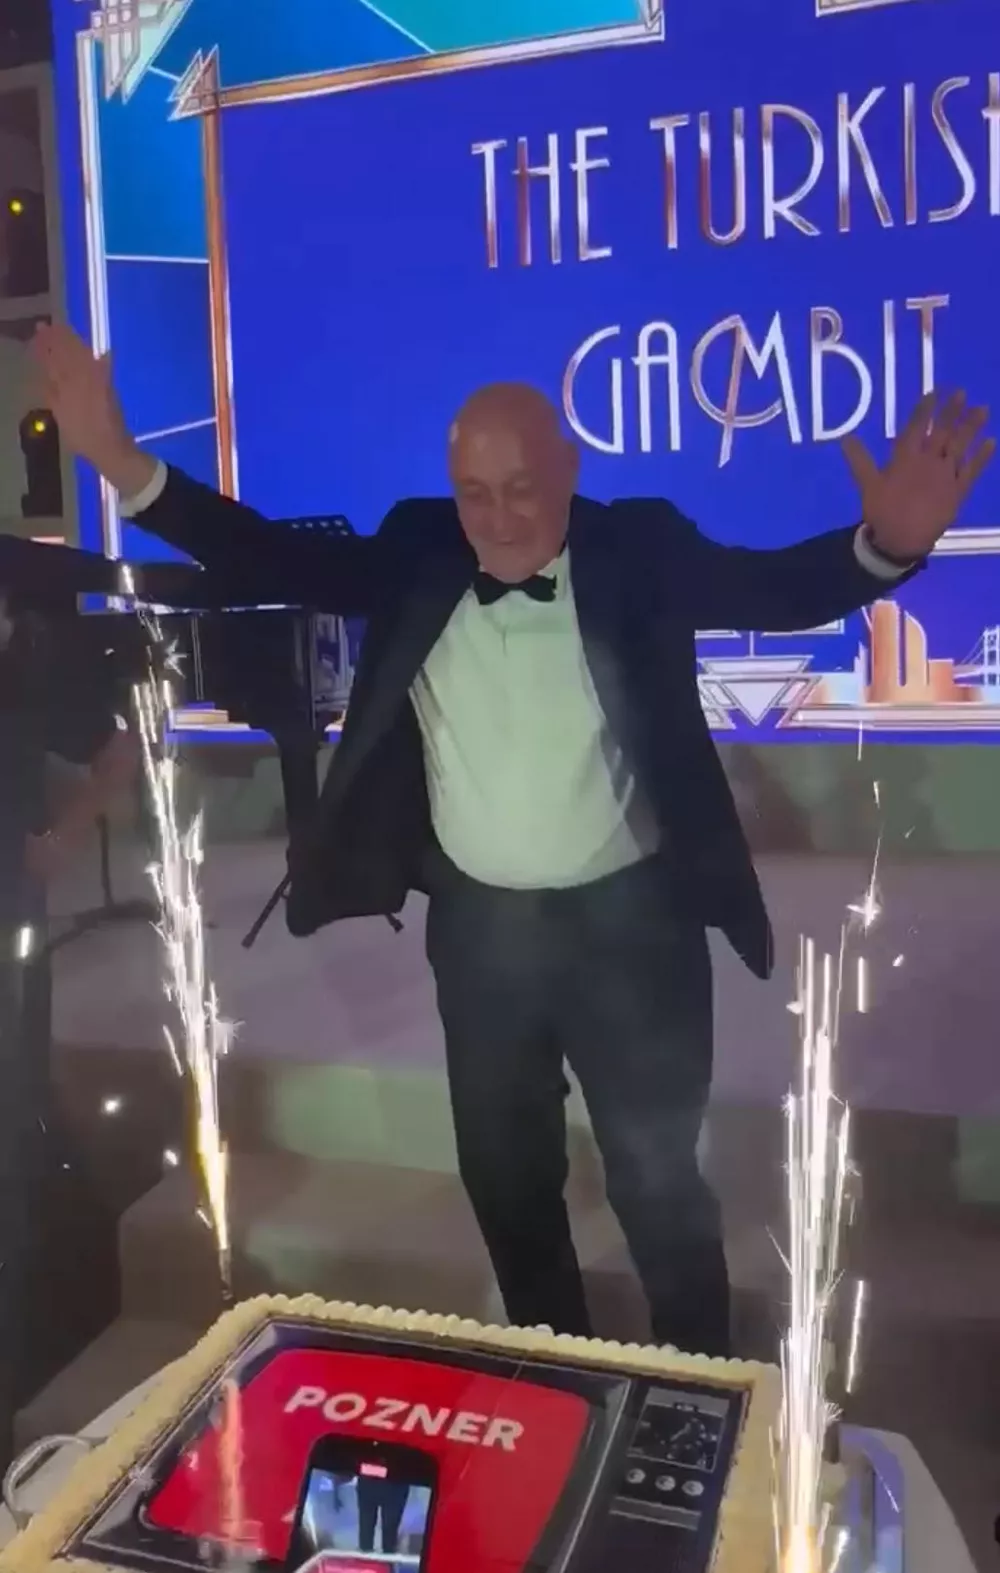 Владимир Познер во время празднования uqidrkiqxeiqrdatf